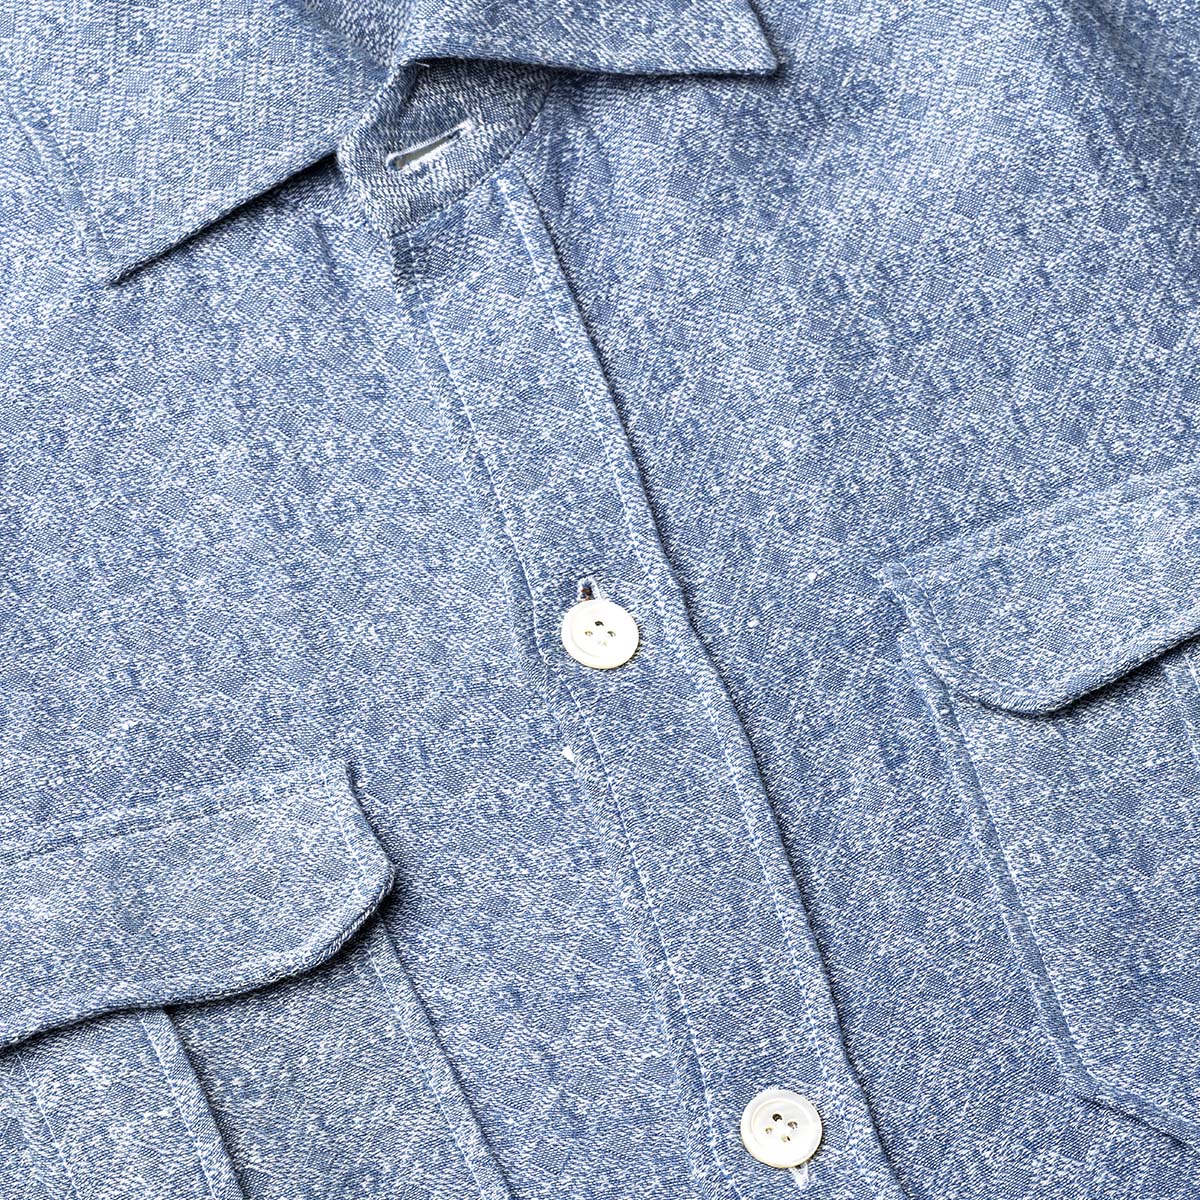 Jacquard Linen Overshirt in Light Blue G. Inglese on sale 2022 2